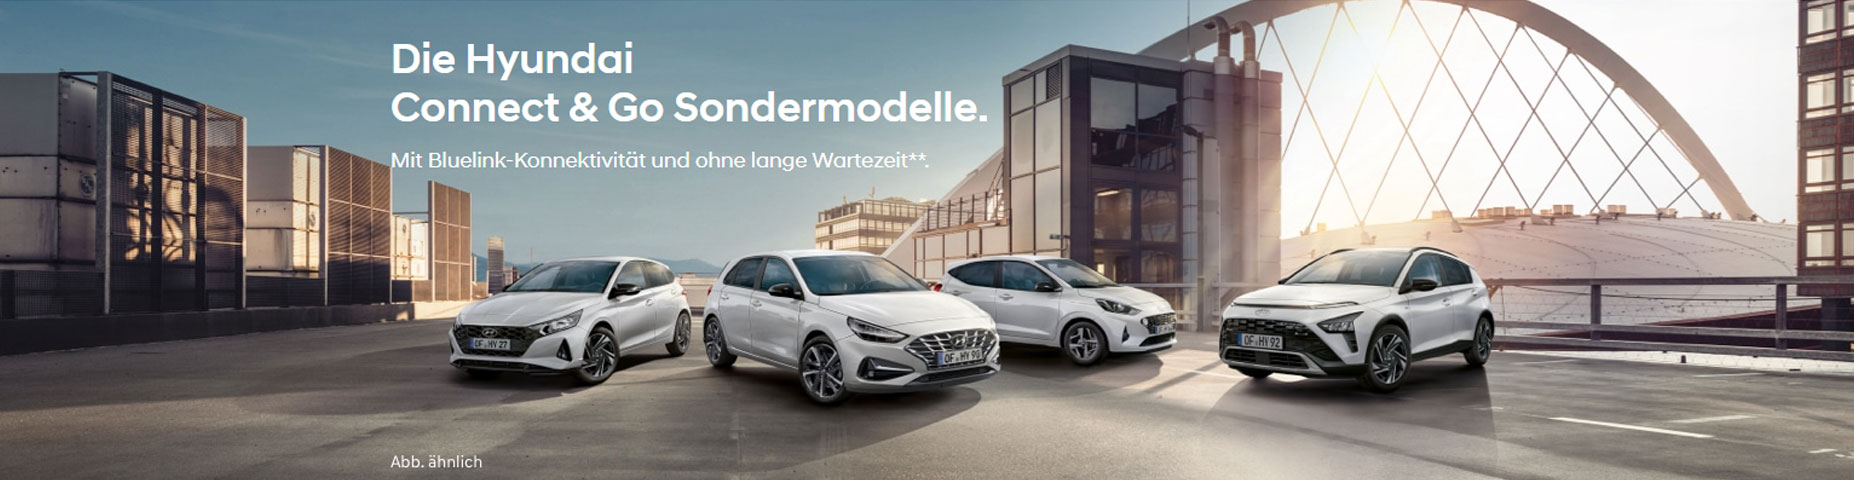 Die Hyundai Connect & Go Sondermodelle.